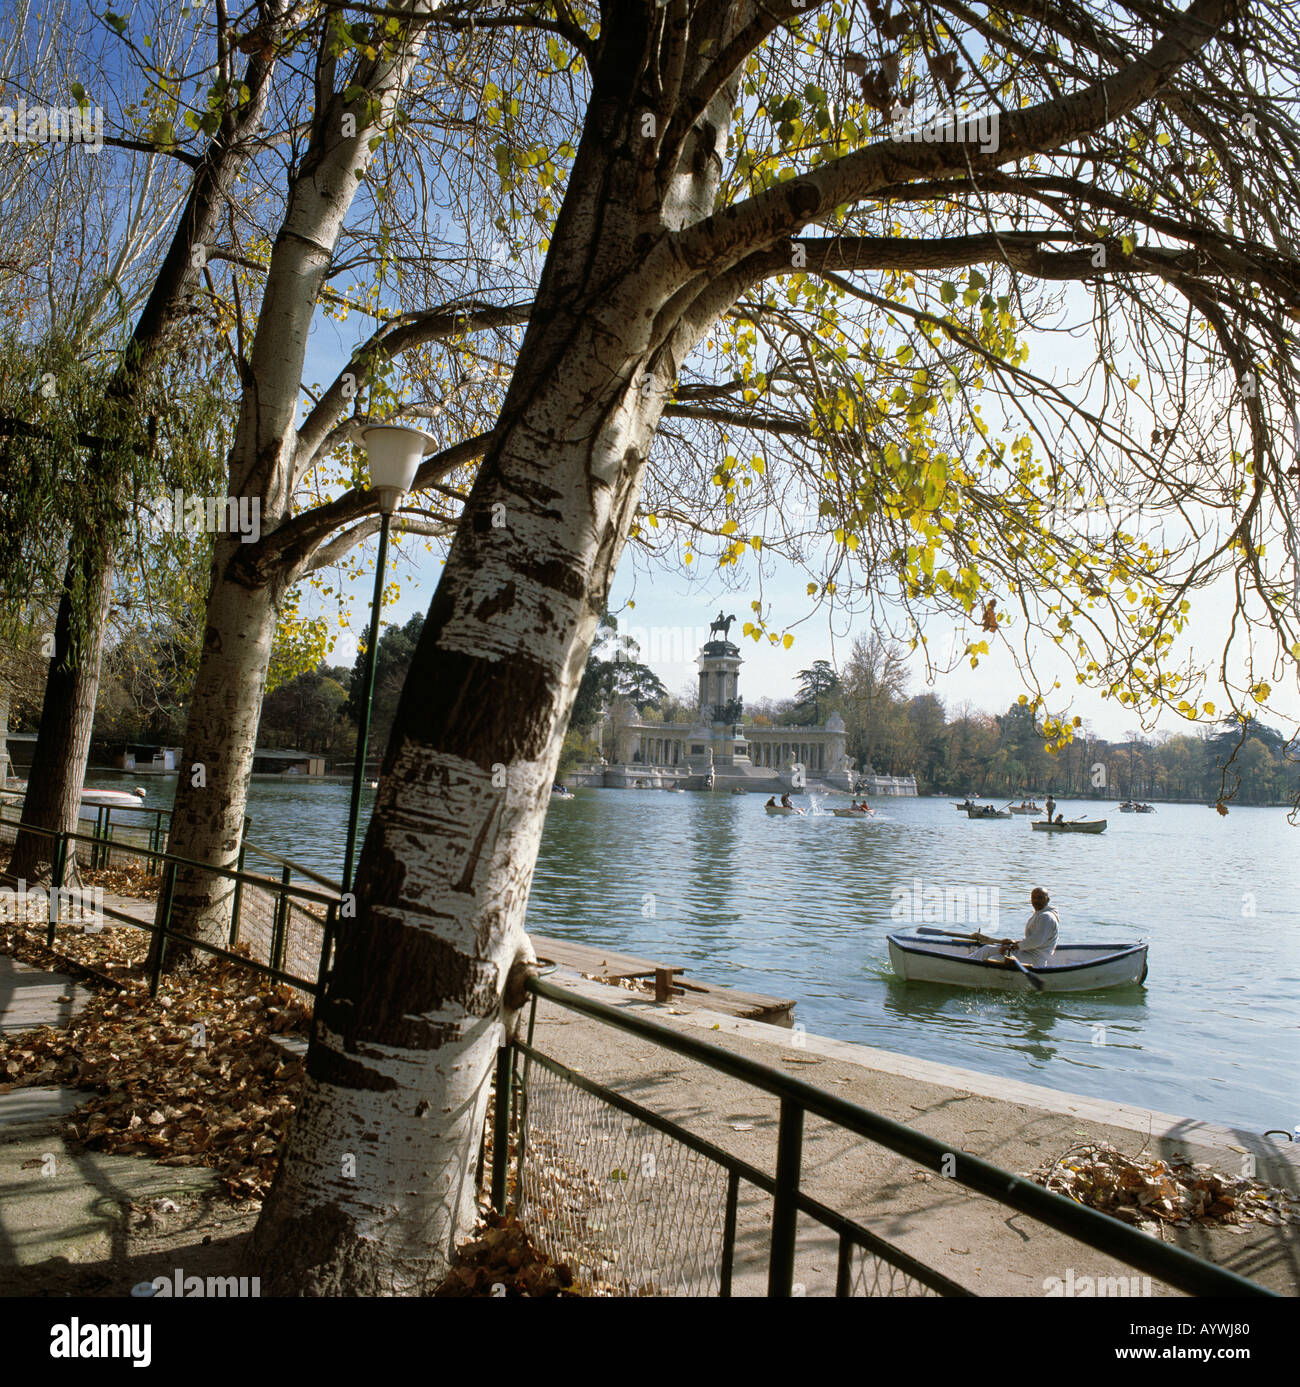 Parque del Retiro, Retiro-Park, Denkmal Koenig Alfons XII, Teich mit Ruderbooten, herbstliche Birken, Madrid Stock Photo